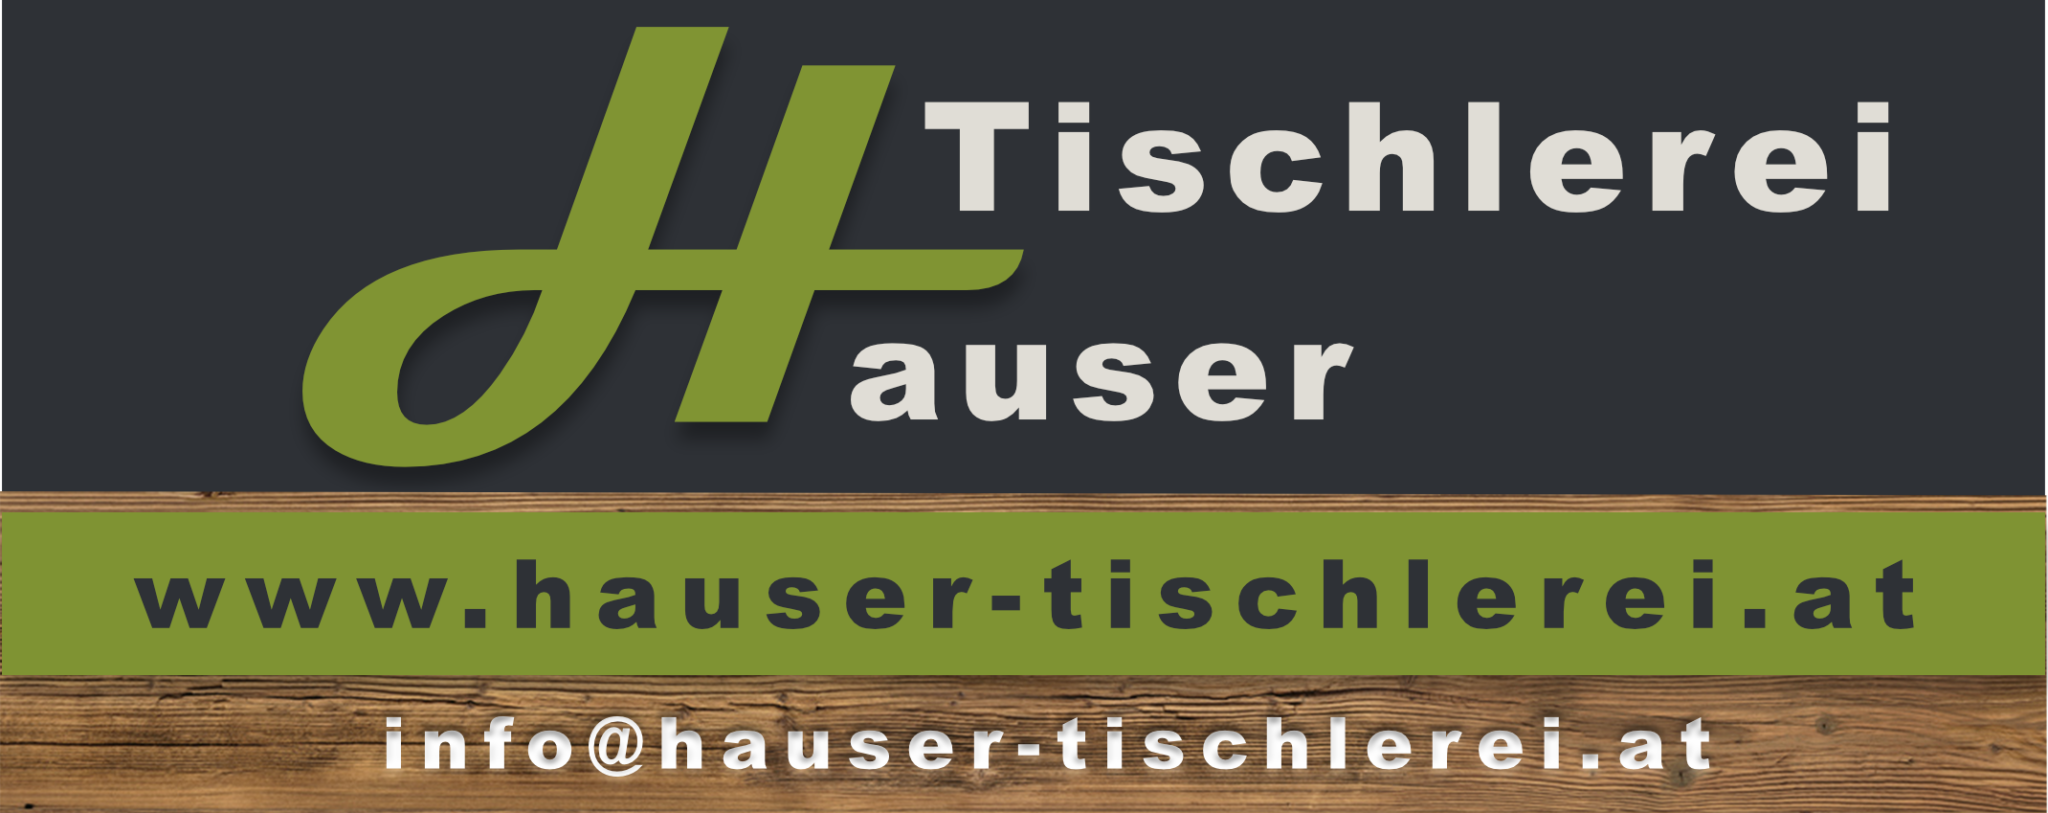 (c) Hauser-tischlerei.at